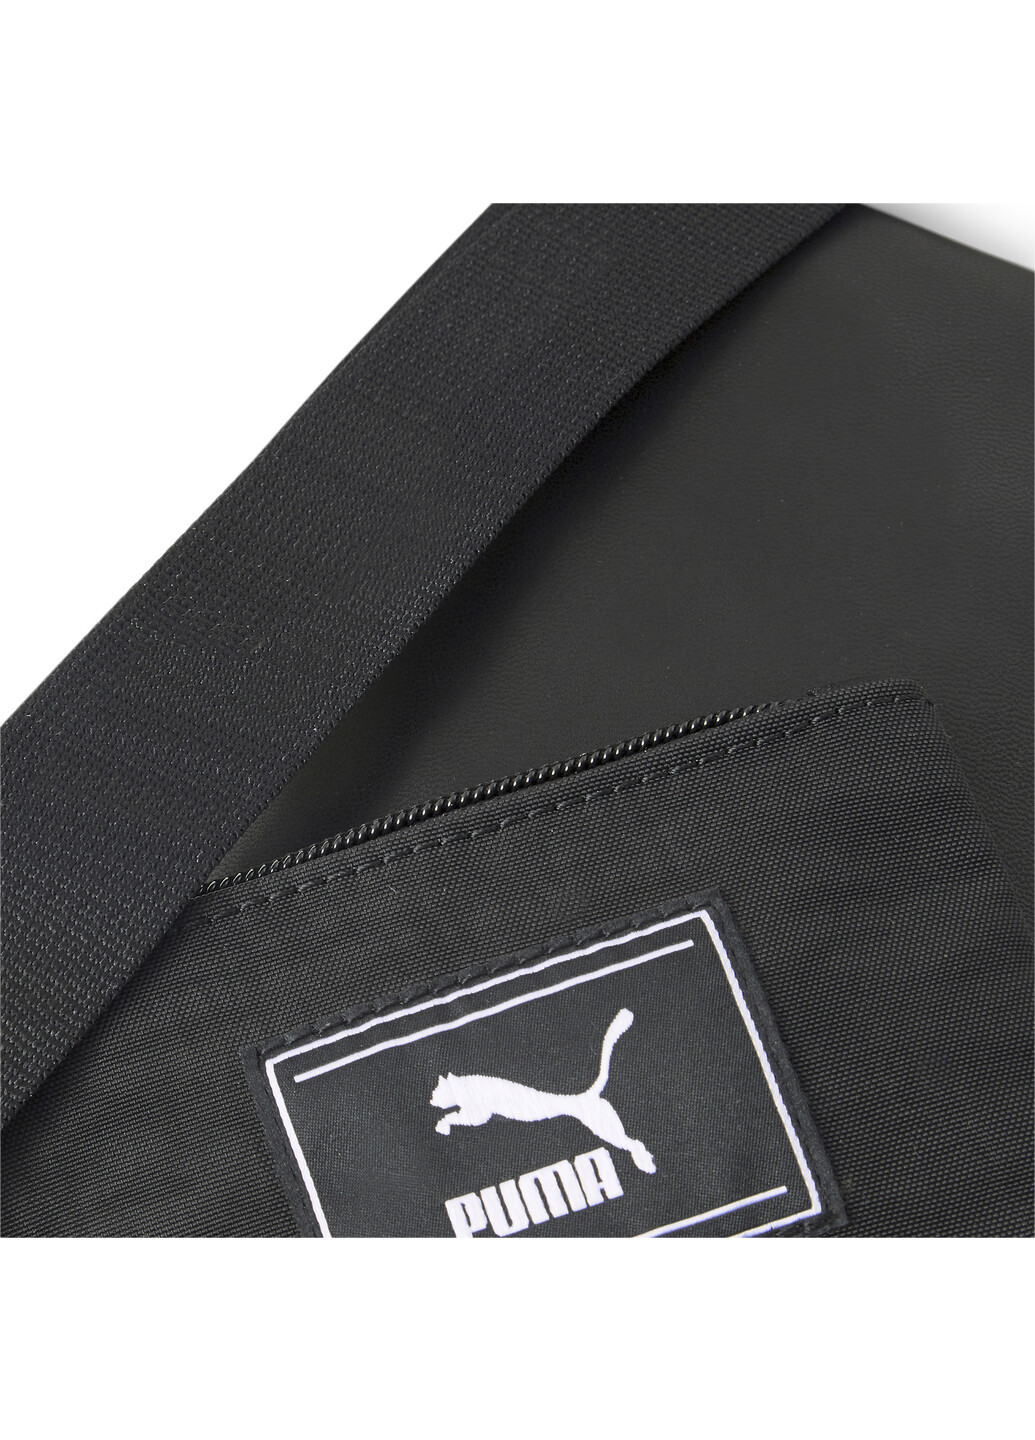 Сумка Prime Time Multi Pouch Bag Puma однотонная чёрная спортивная